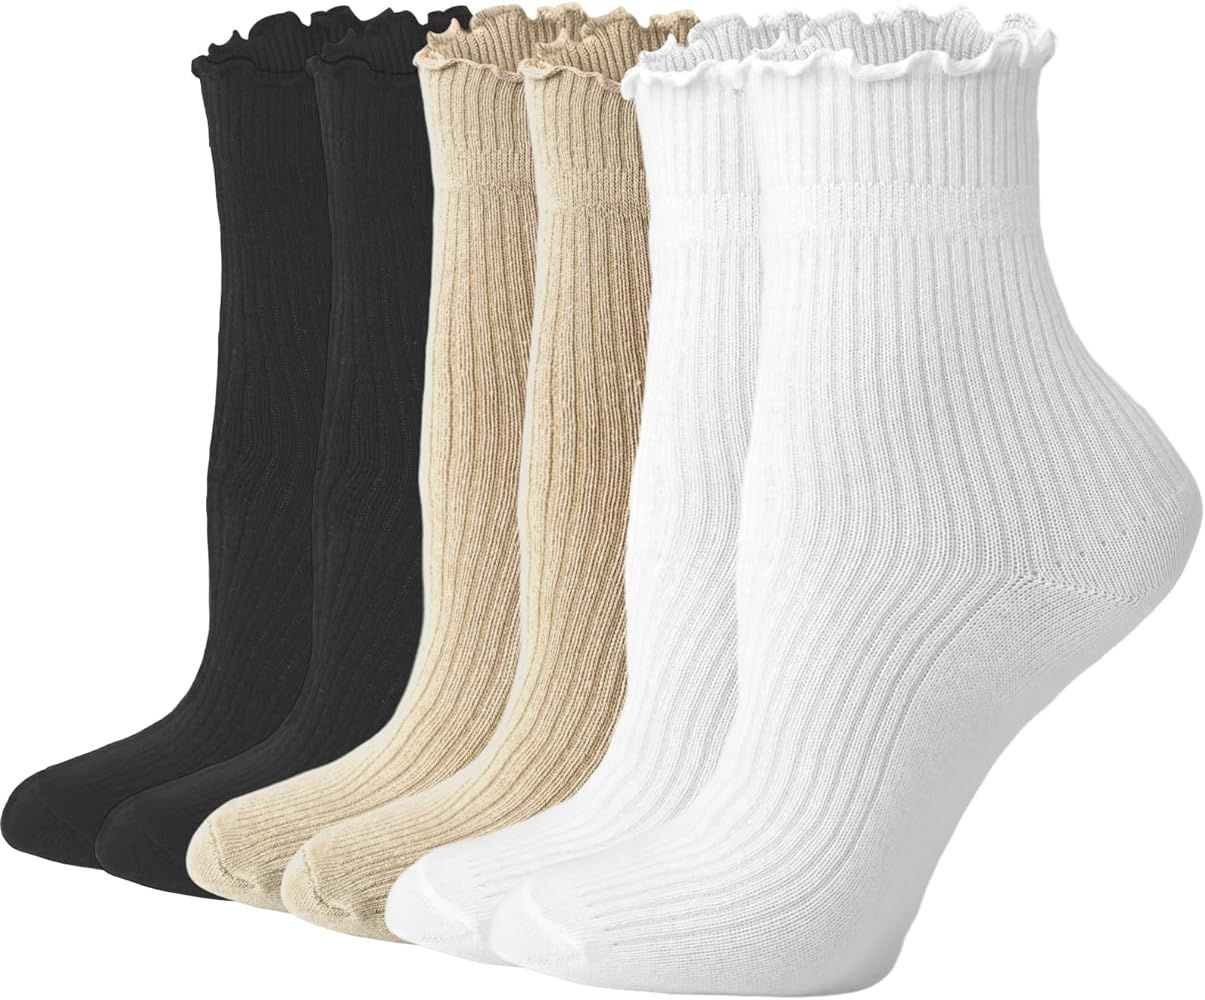 Womens Ruffle Socks Cute Frilly Ankle Socks Quarter Crew Socks for Women Girl | Amazon (US)